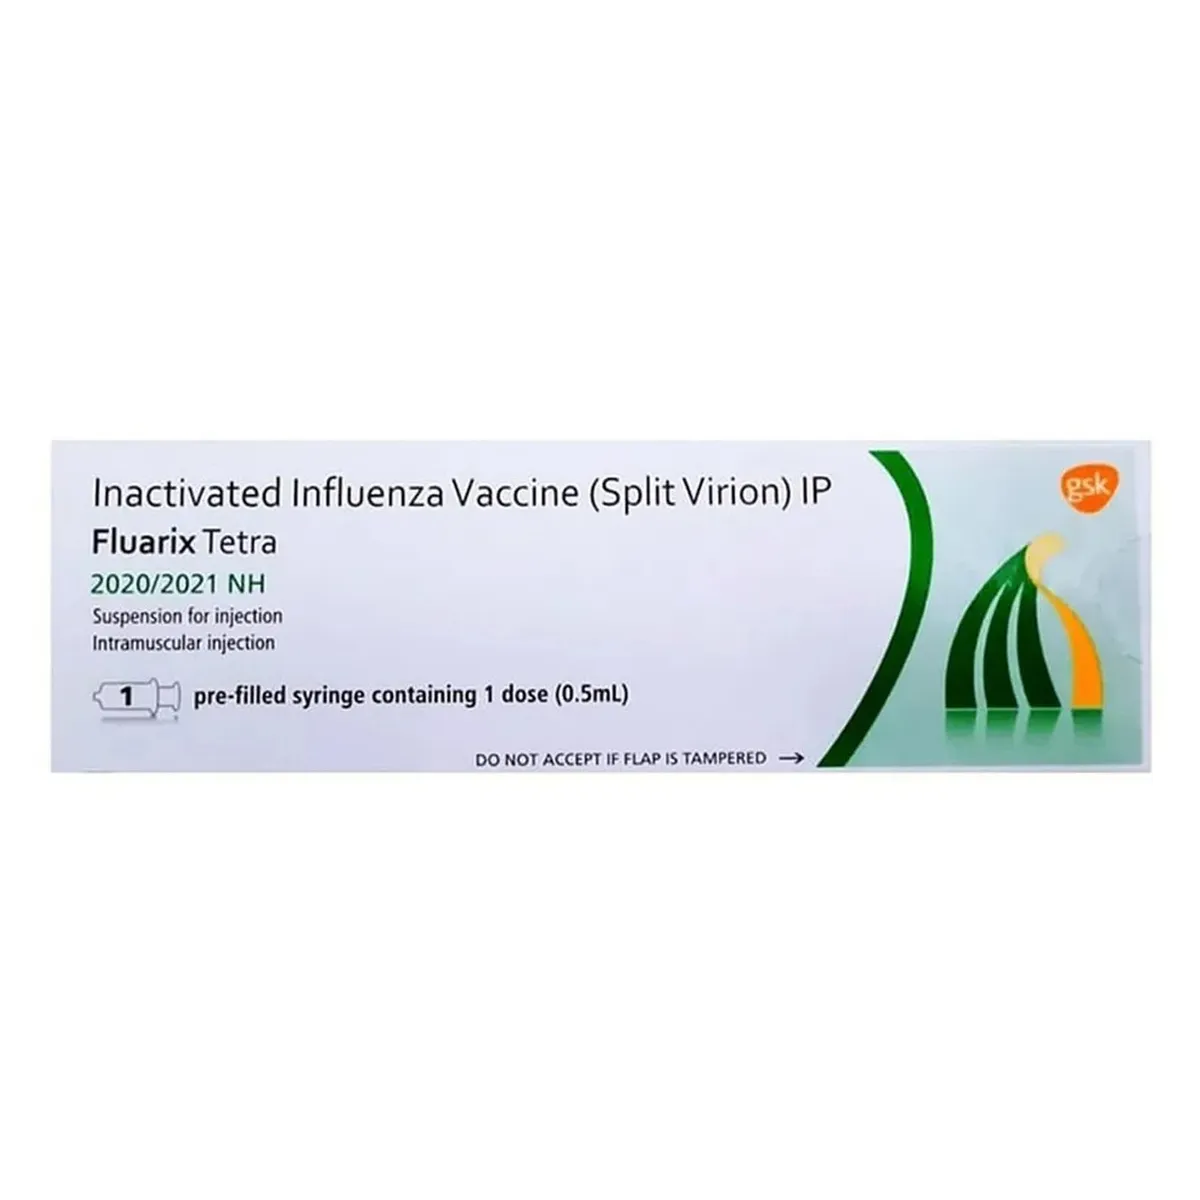 fluarix-tetra-20202021-nh-vaccine